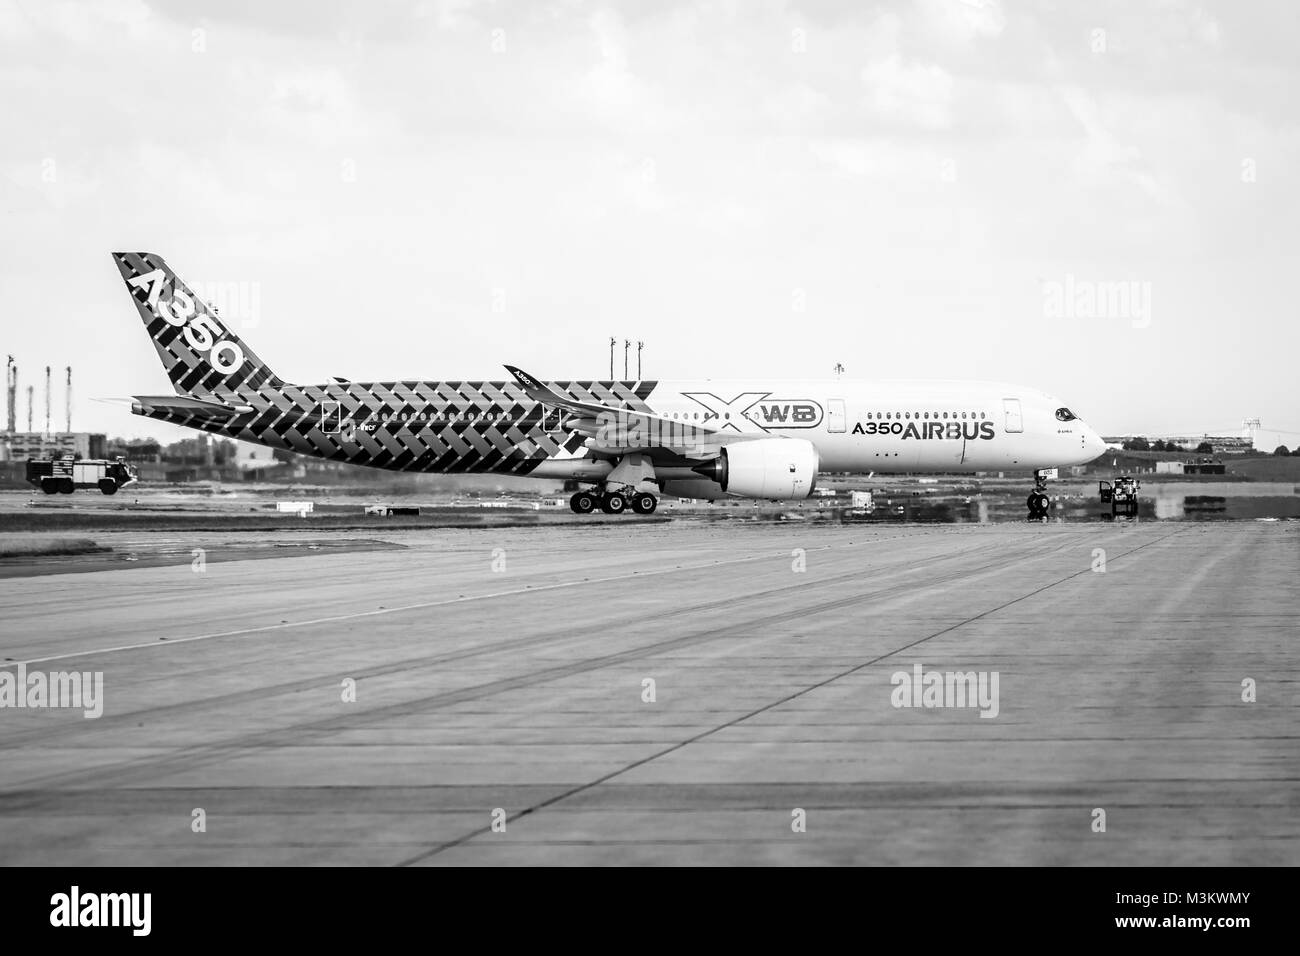 BERLIN, DEUTSCHLAND - Juni 02, 2016: Der neueste Airbus A350 XWB am Flugplatz. Schwarz und Weiß. Ausstellung die ILA Berlin Air Show 2016 Stockfoto